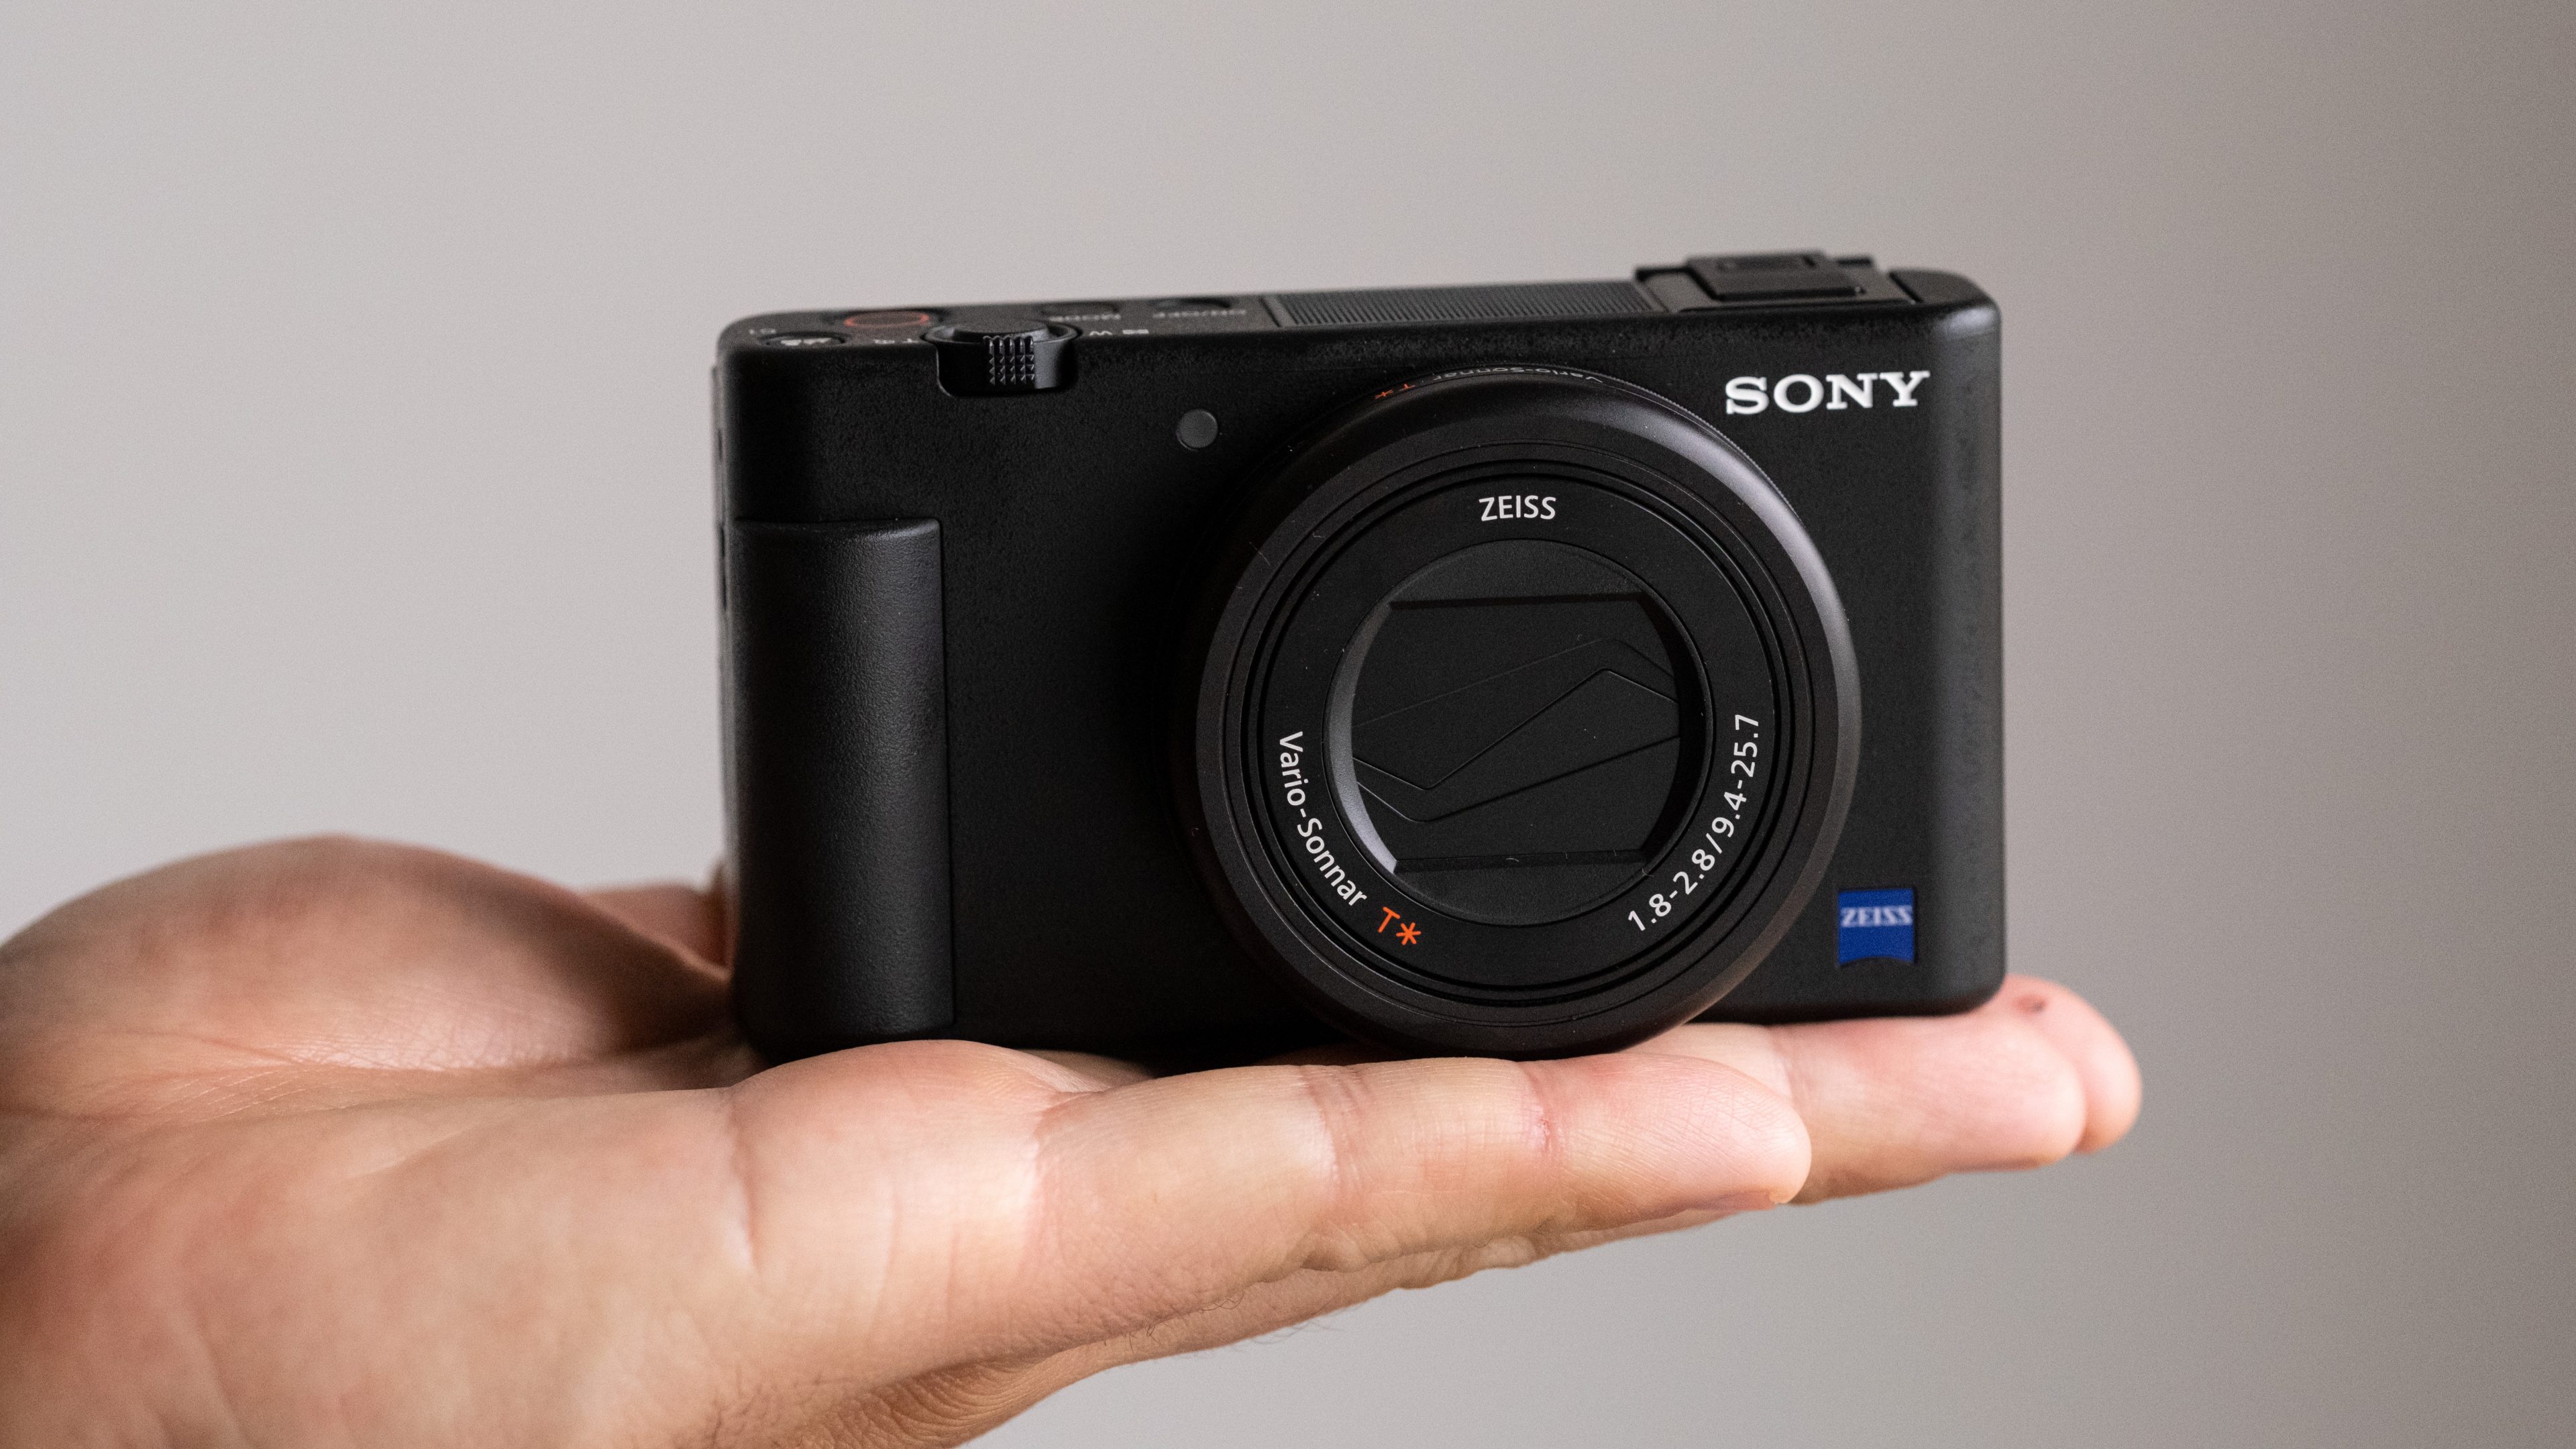 Sony ZV-1 ra mắt thị trường Việt, máy ảnh dành cho người sáng tạo nội dung, giá 19,990,000 VND